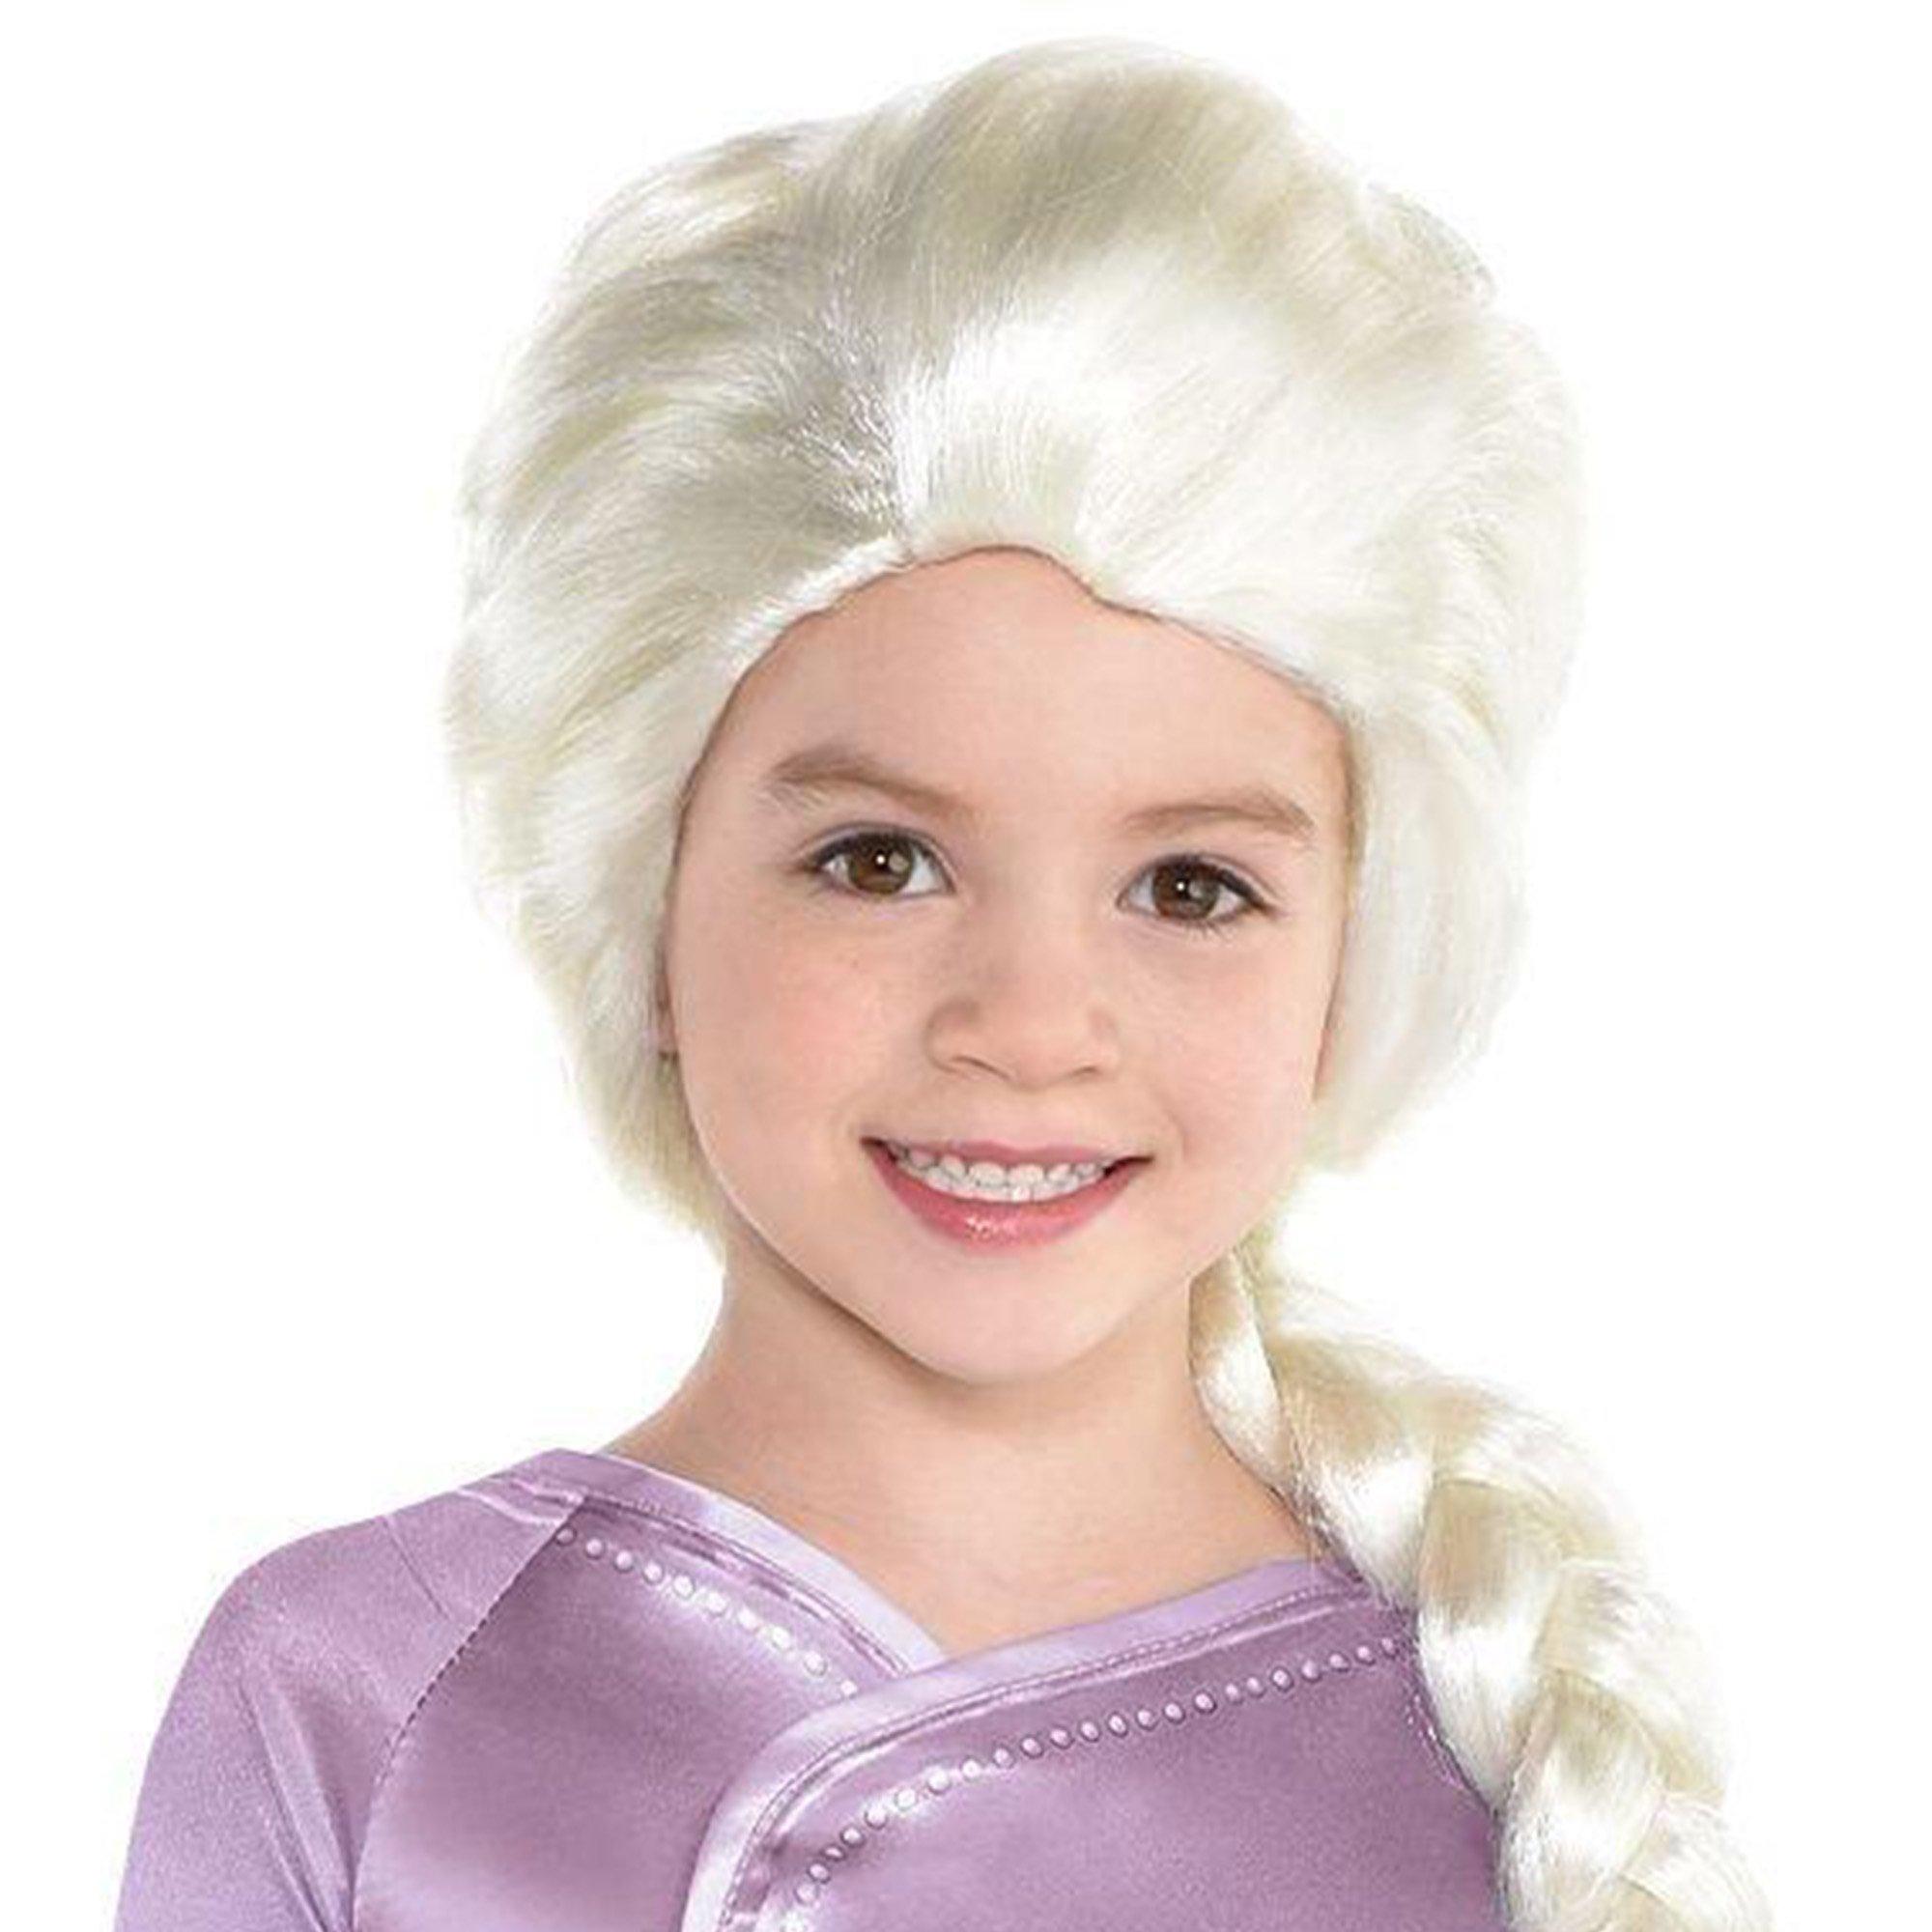 Kids' Act 1 Elsa Costume - Frozen 2